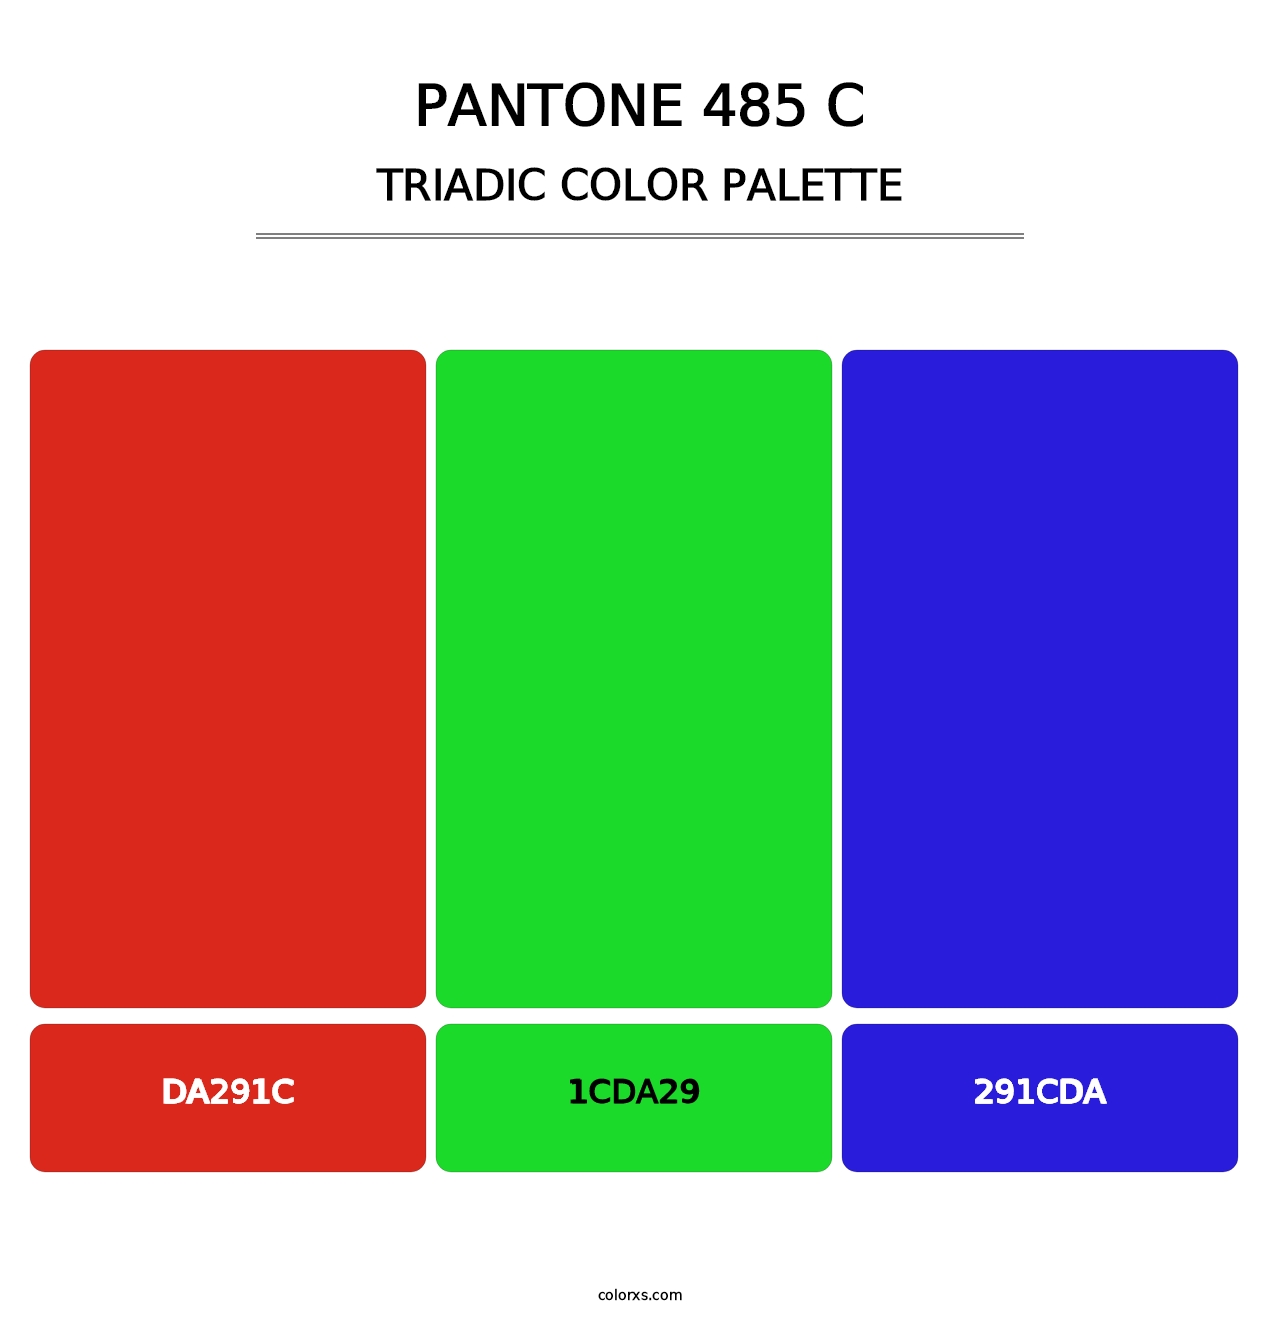 PANTONE 485 C - Triadic Color Palette